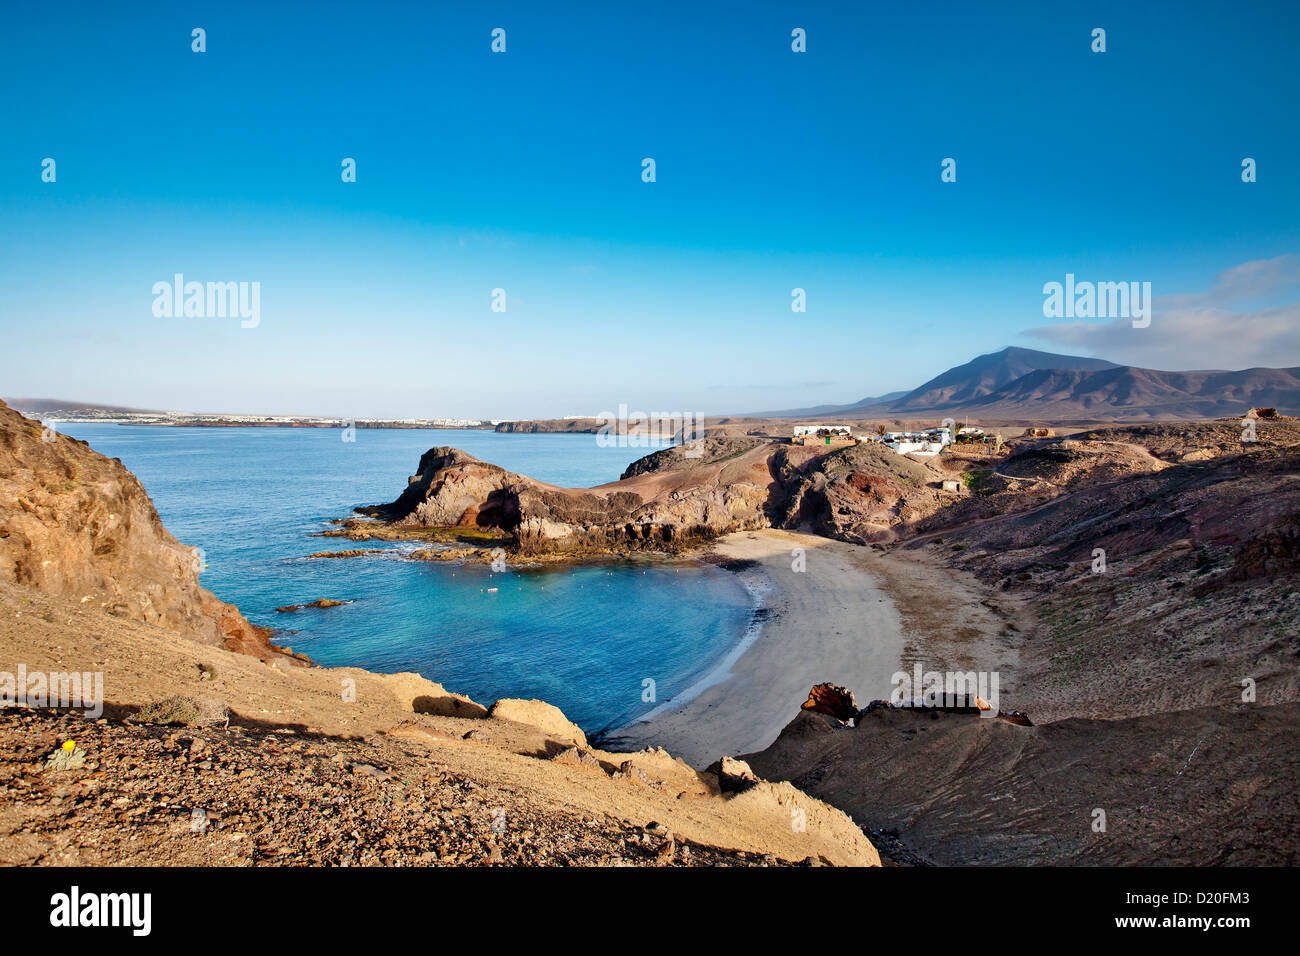 Playa Papagayo en una bahía, Lanzarote, Islas Canarias, España, Europa Foto de stock